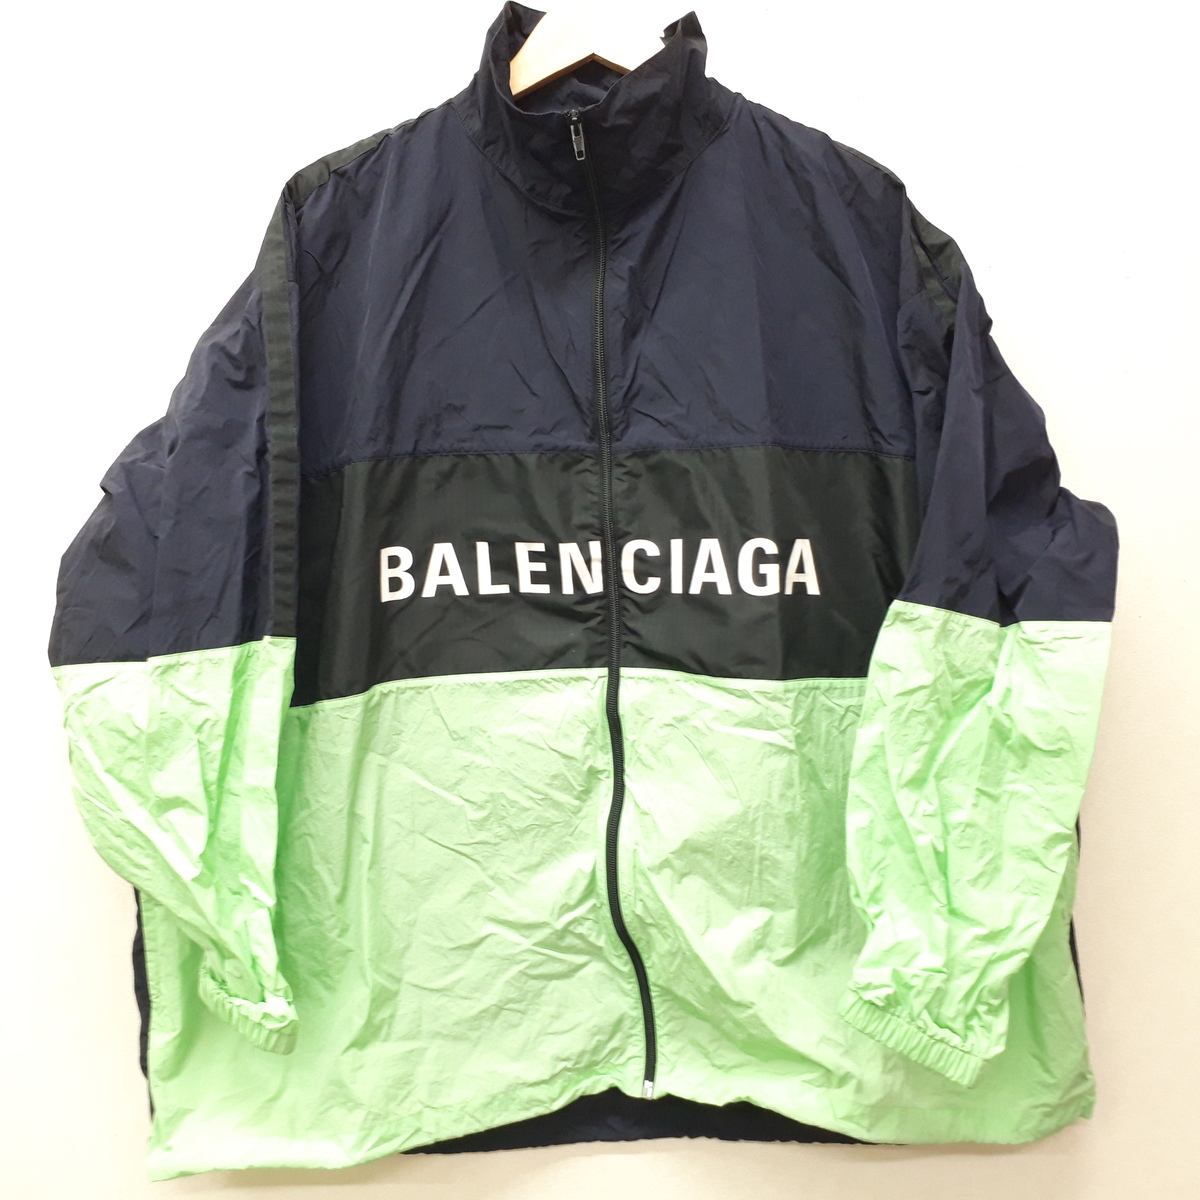 バレンシアガの528638 18AW ロゴ ナイロン ジップアップジャケットの買取実績です。